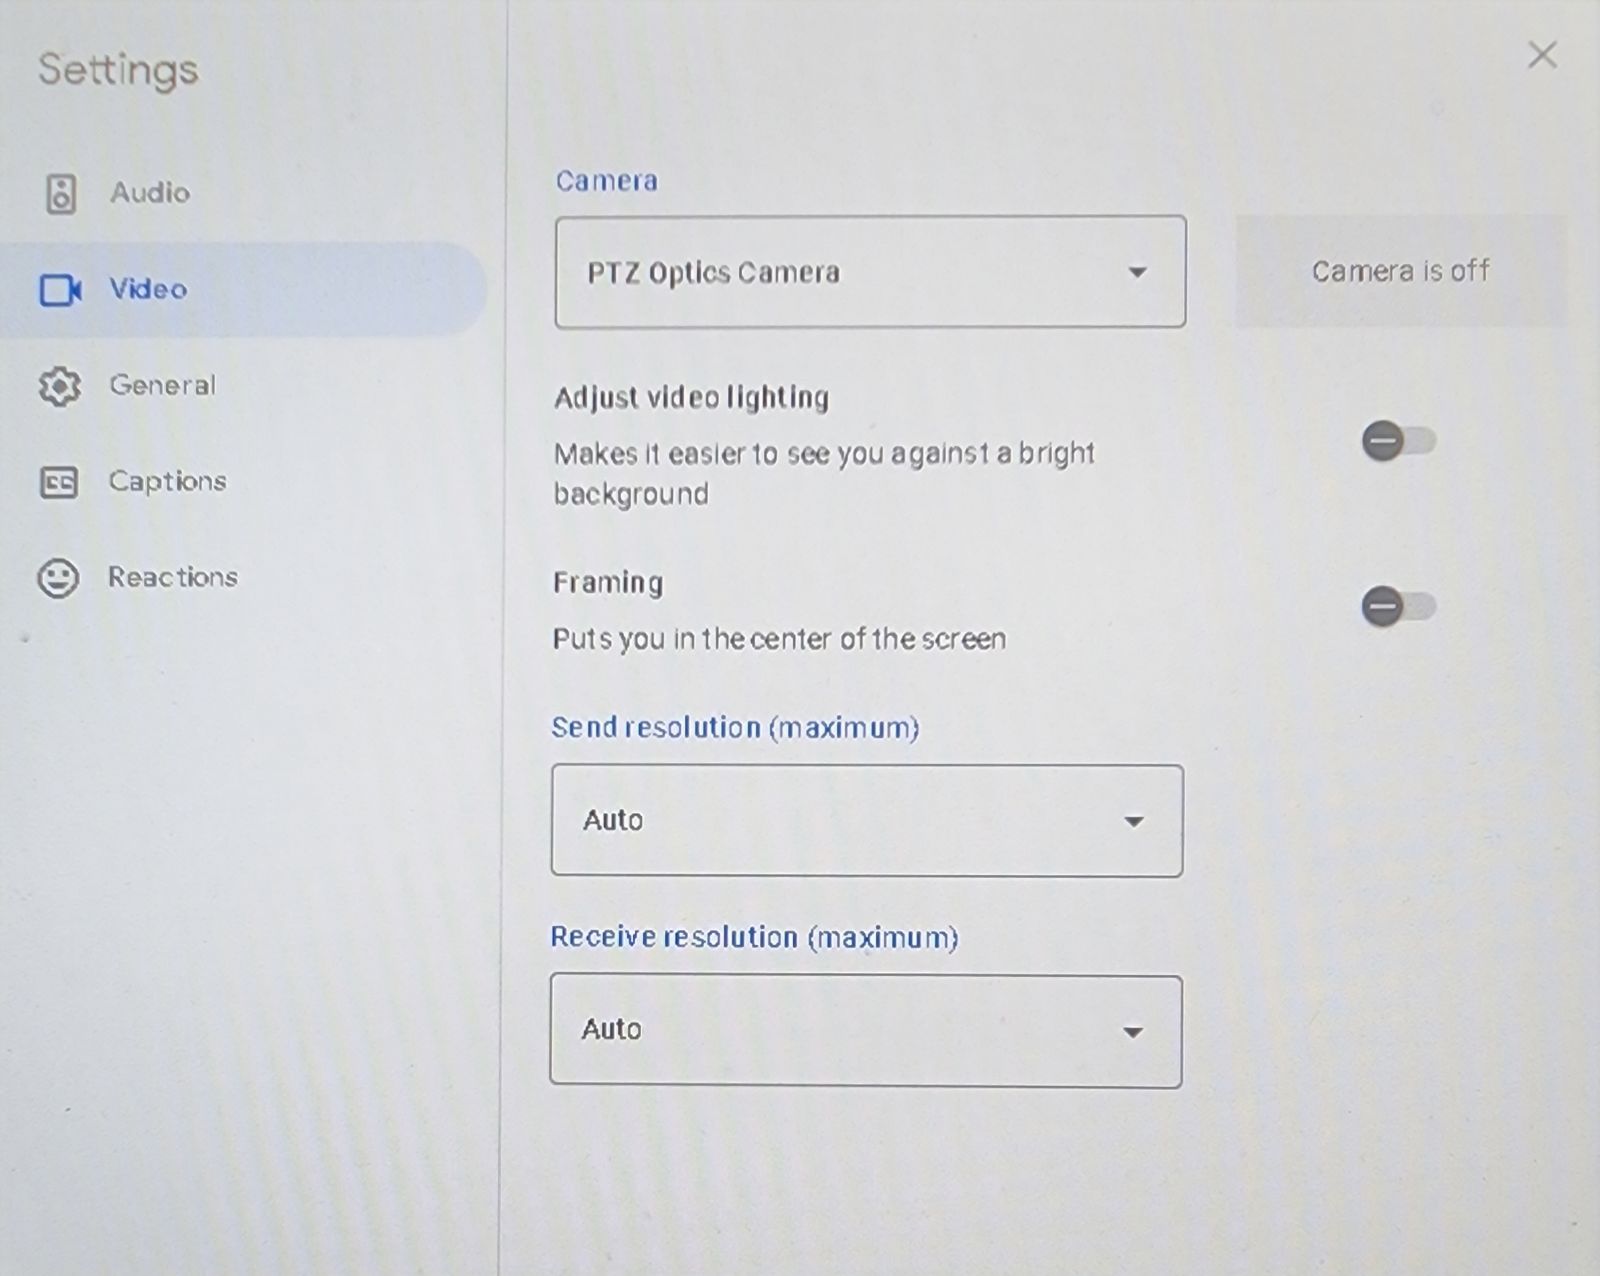 Video menu shown with PTZ Optics Camera chosen for camera